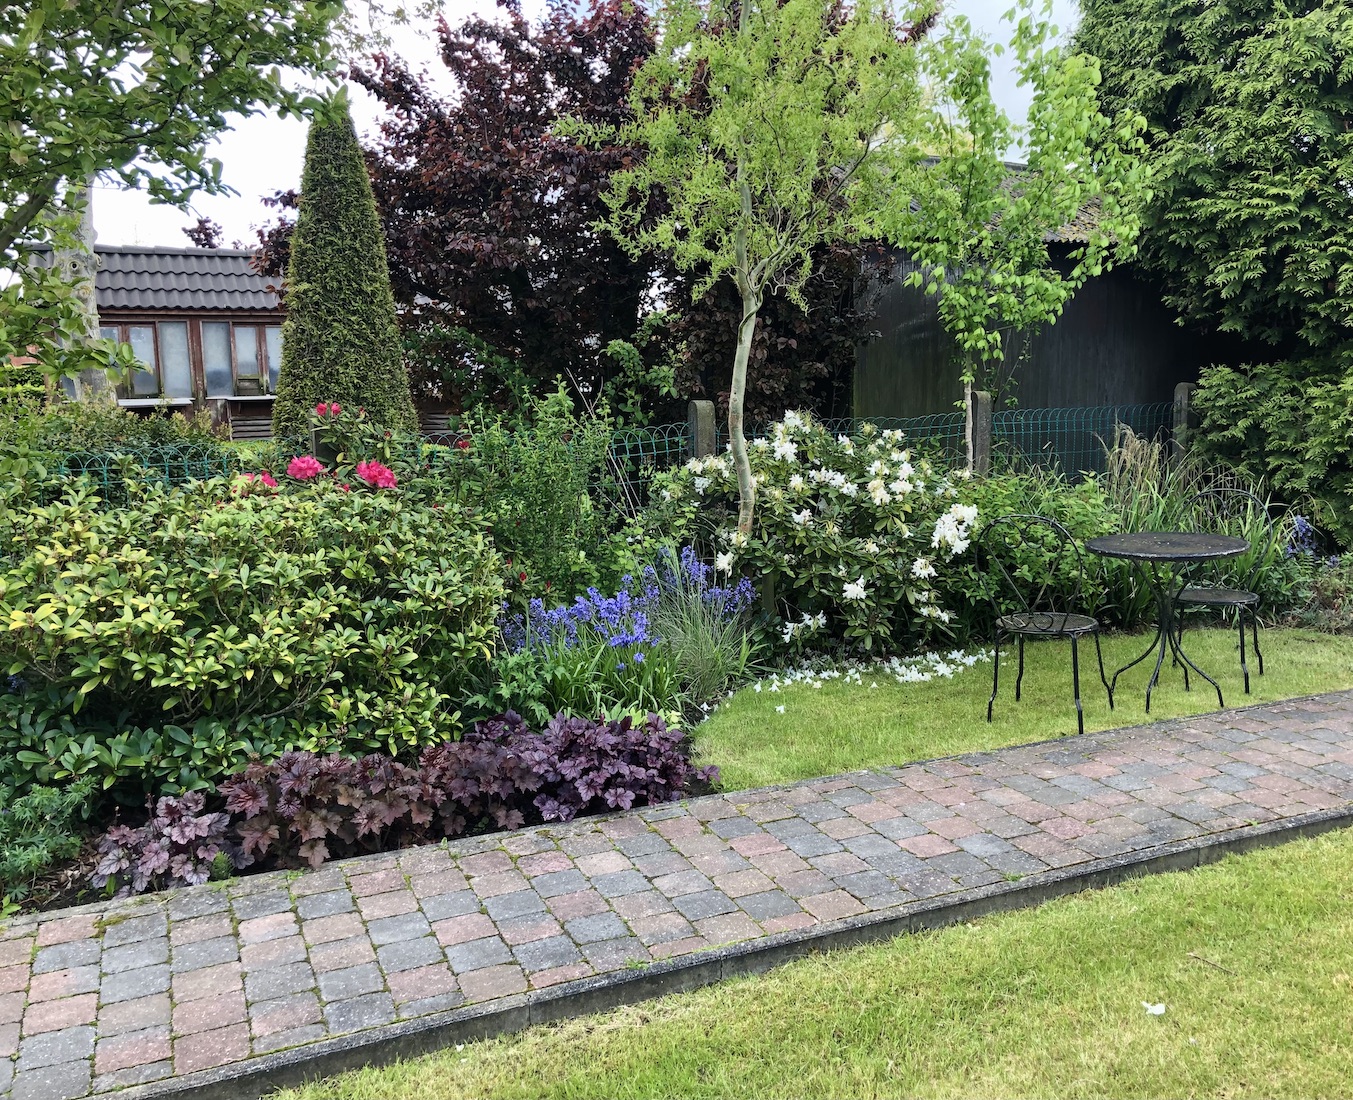 Border met planten in een tuin